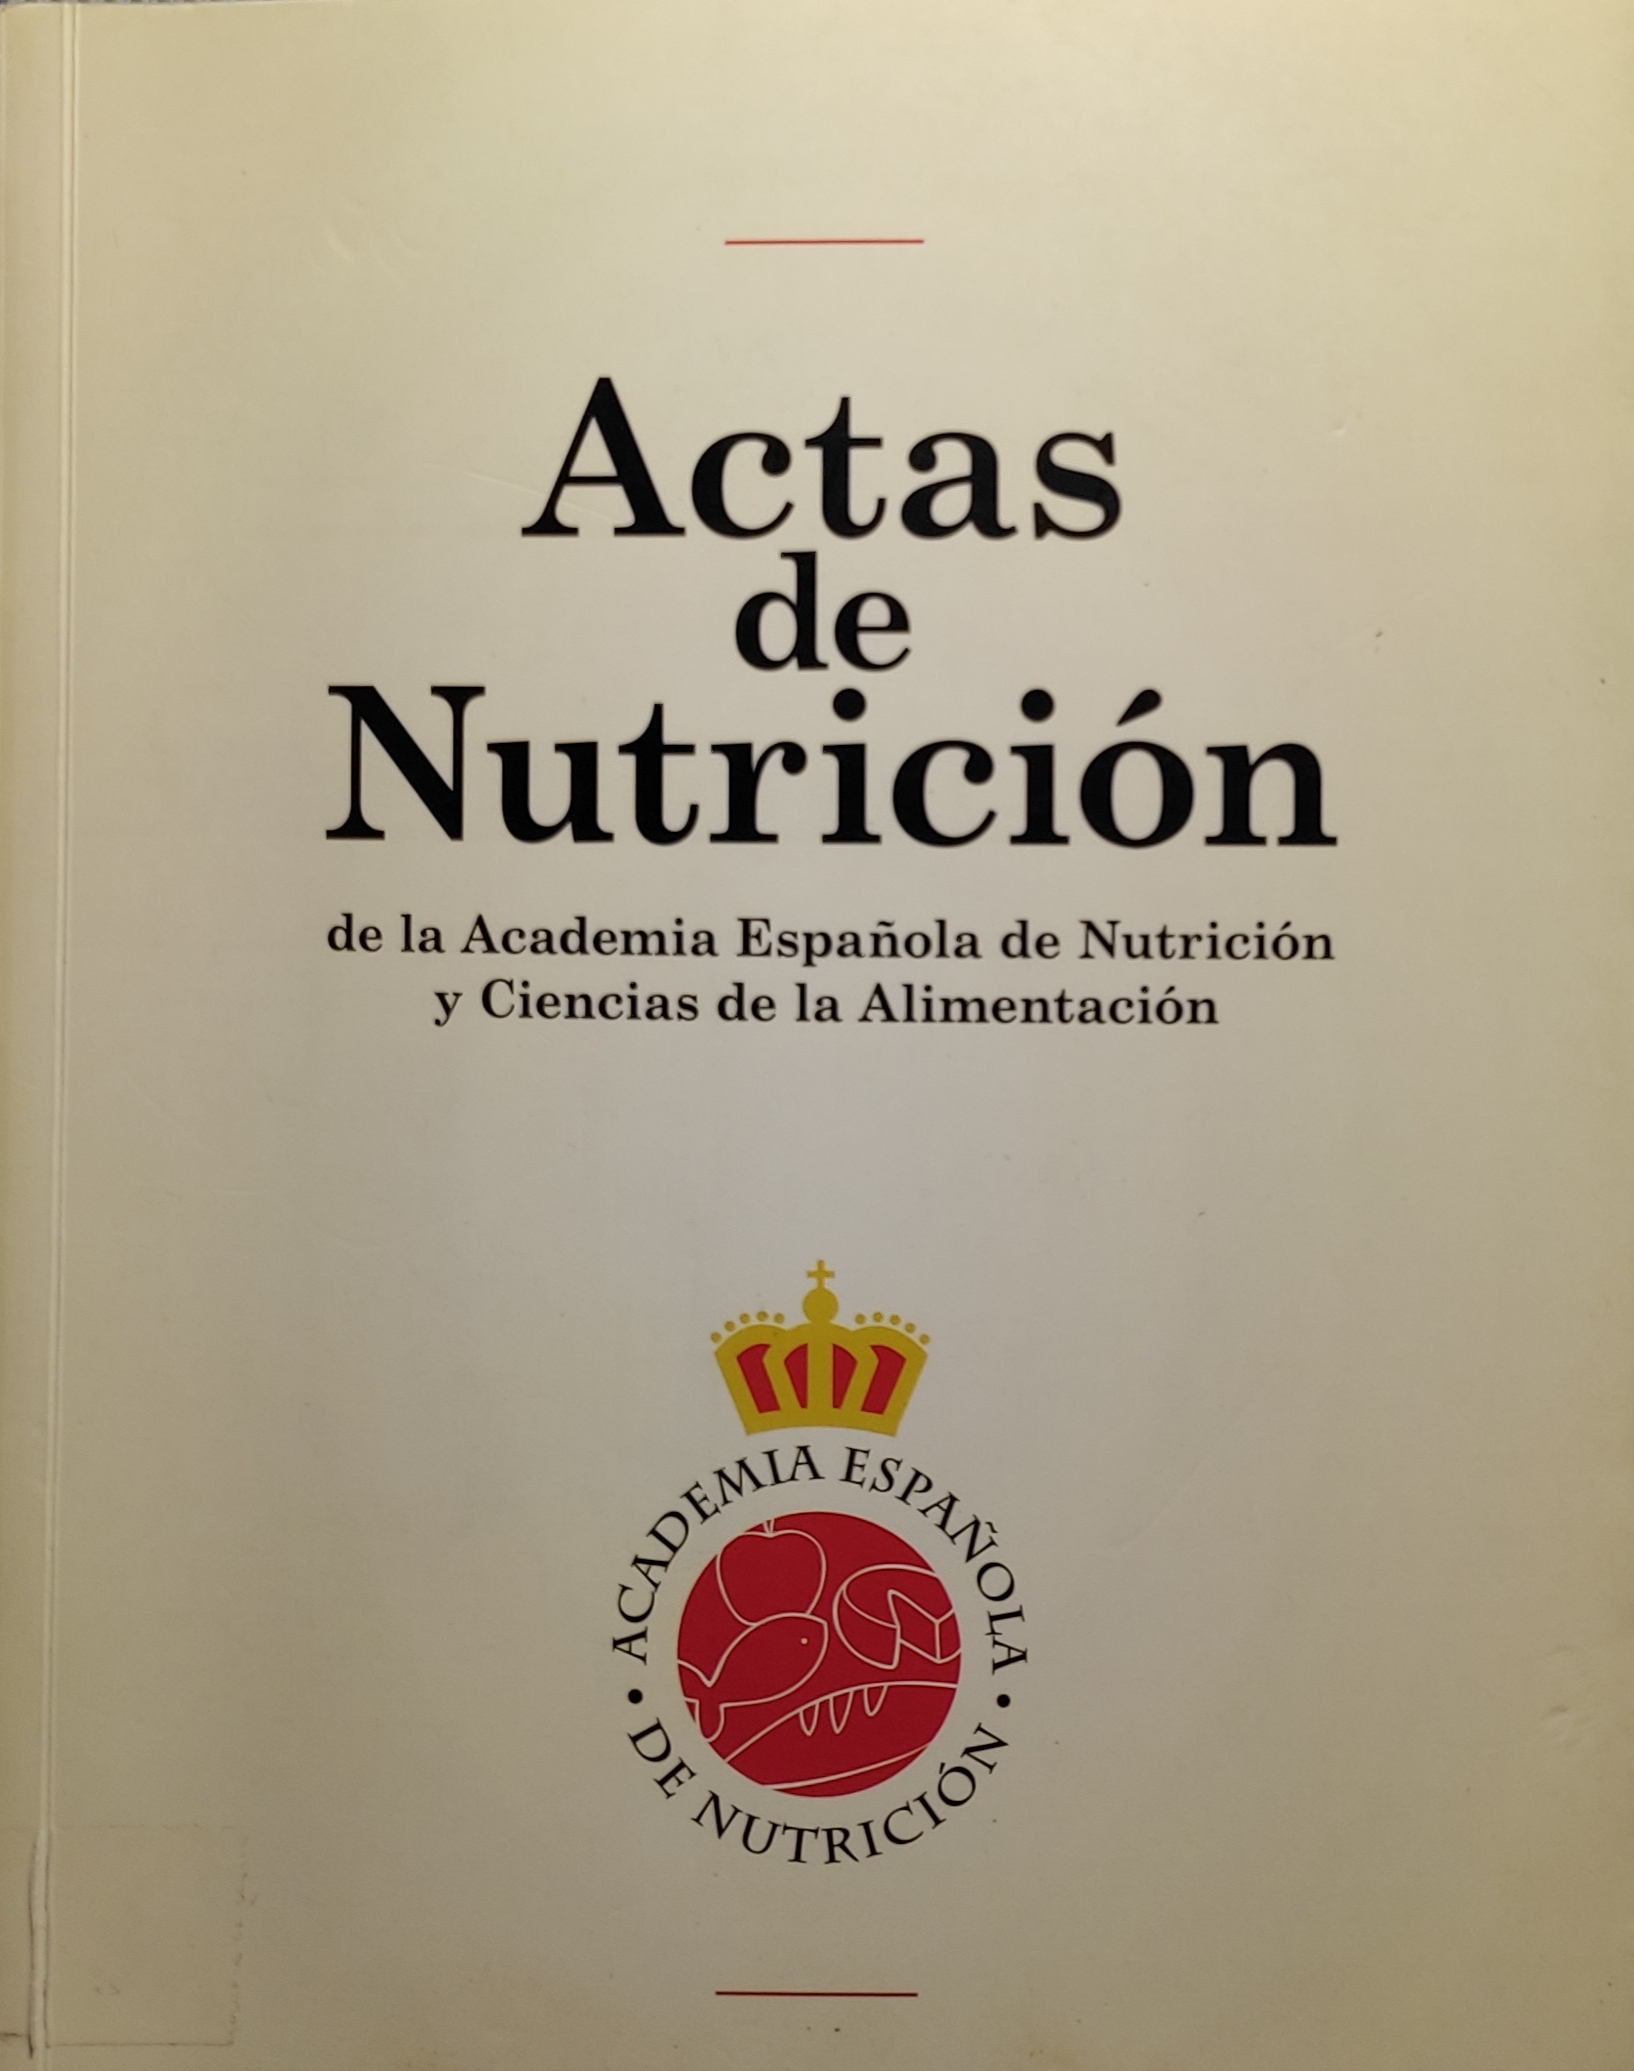 Imagen de portada del libro Actas de Nutrición